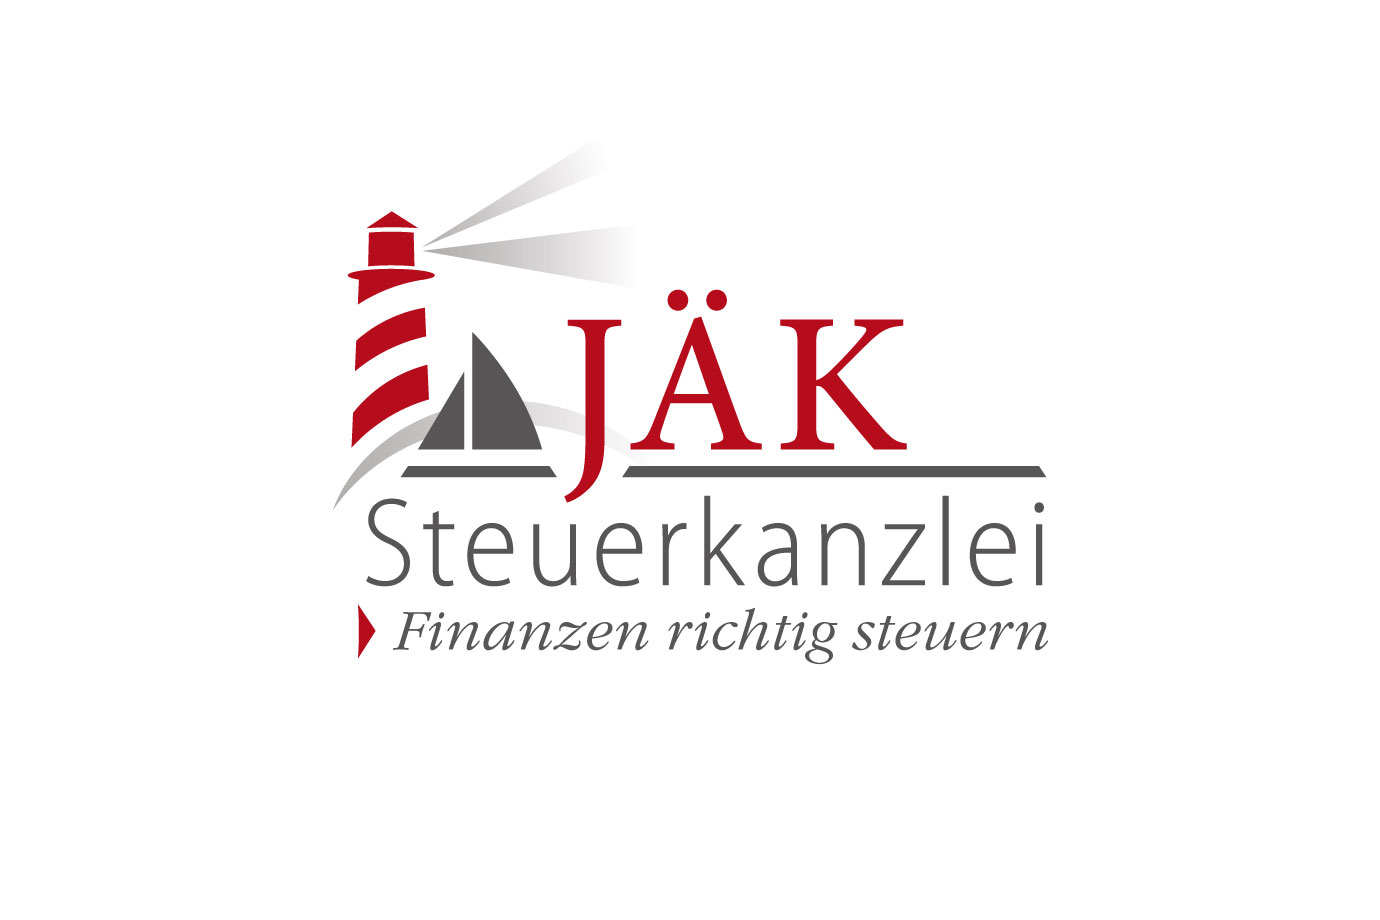 Logoentwicklung: Steuerkanzlei Jäk